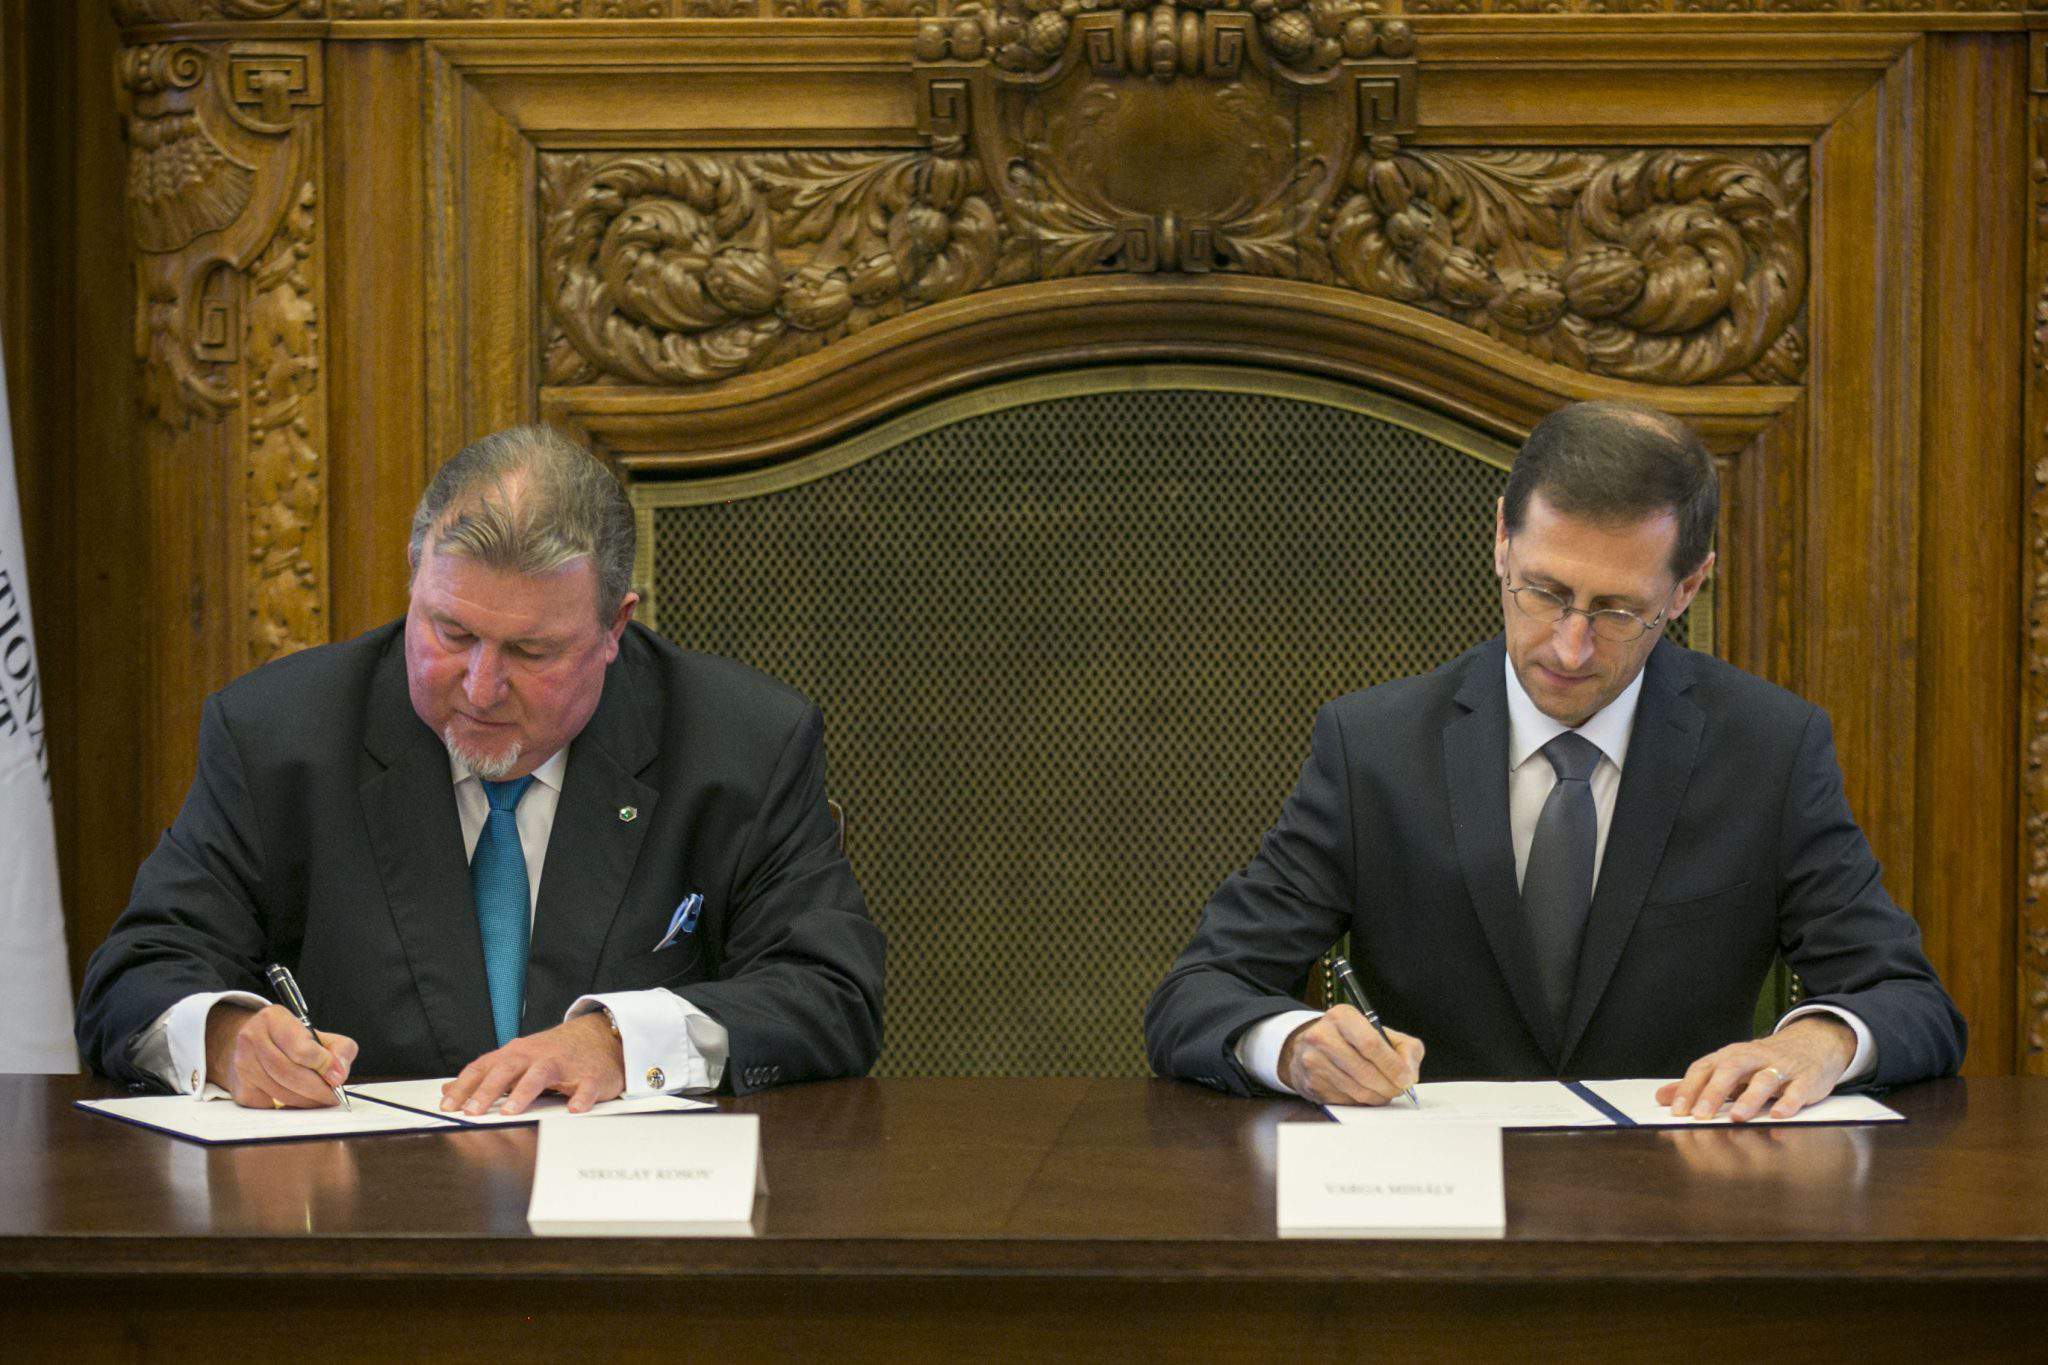 Інвестиційний банк IIB, Варга початкова домовленість про переведення регіонального офісу в Угорщину